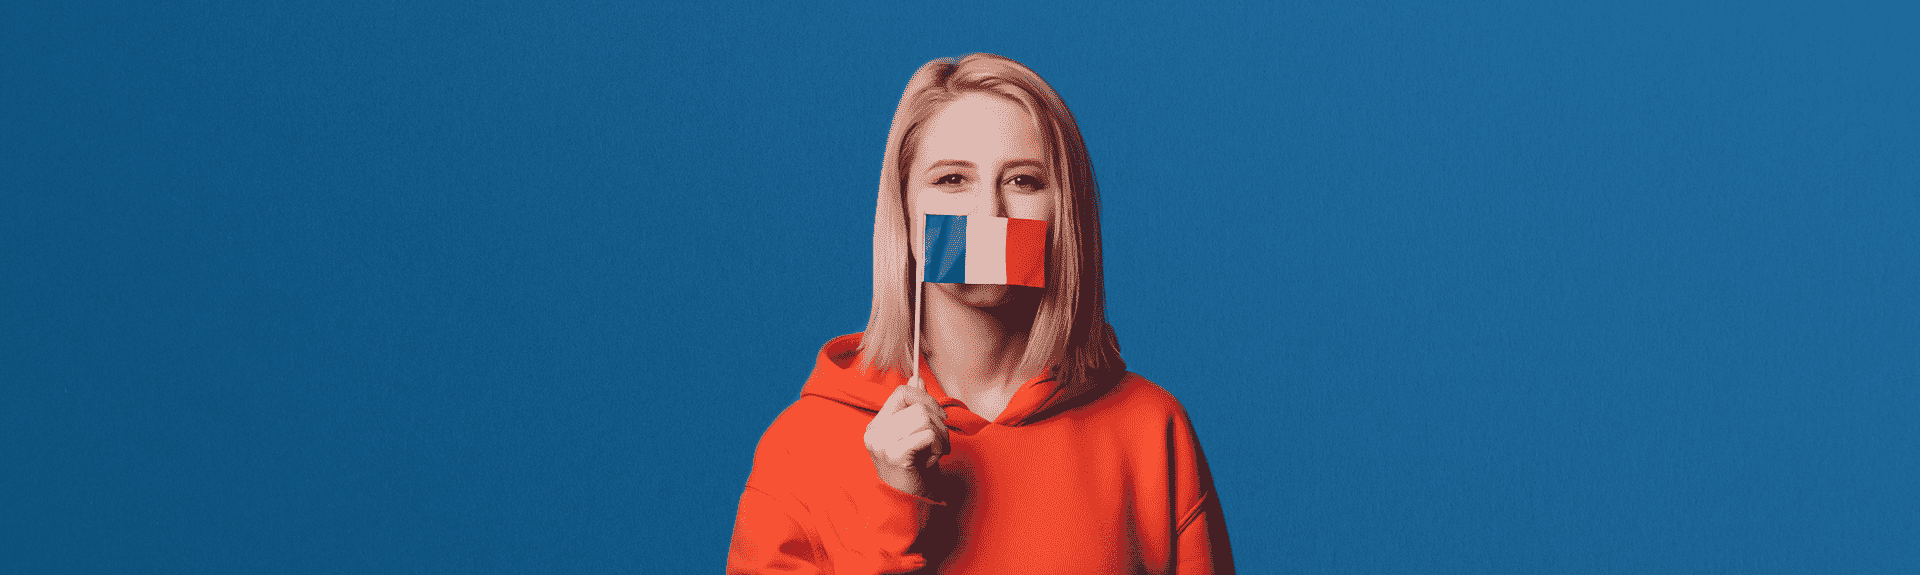 header étudiante avec le drapeau de la France